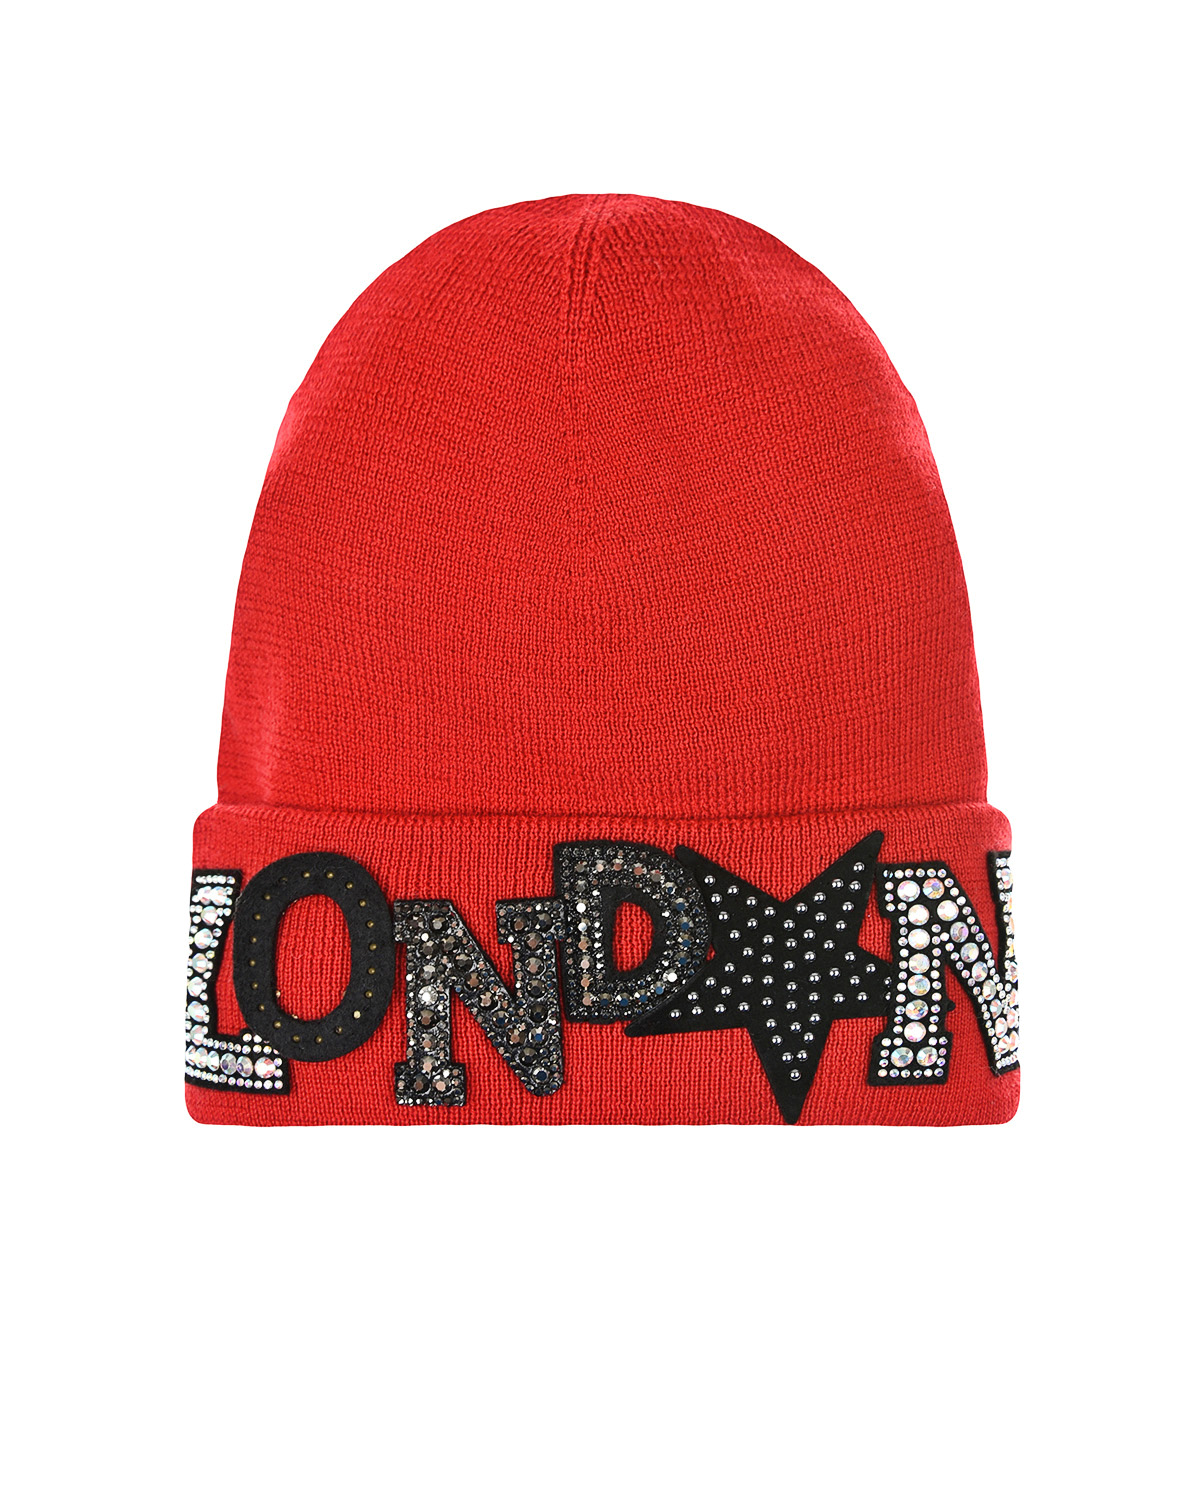 Красная шапка с патчами "London" Regina детская, размер 55/57, цвет красный - фото 1